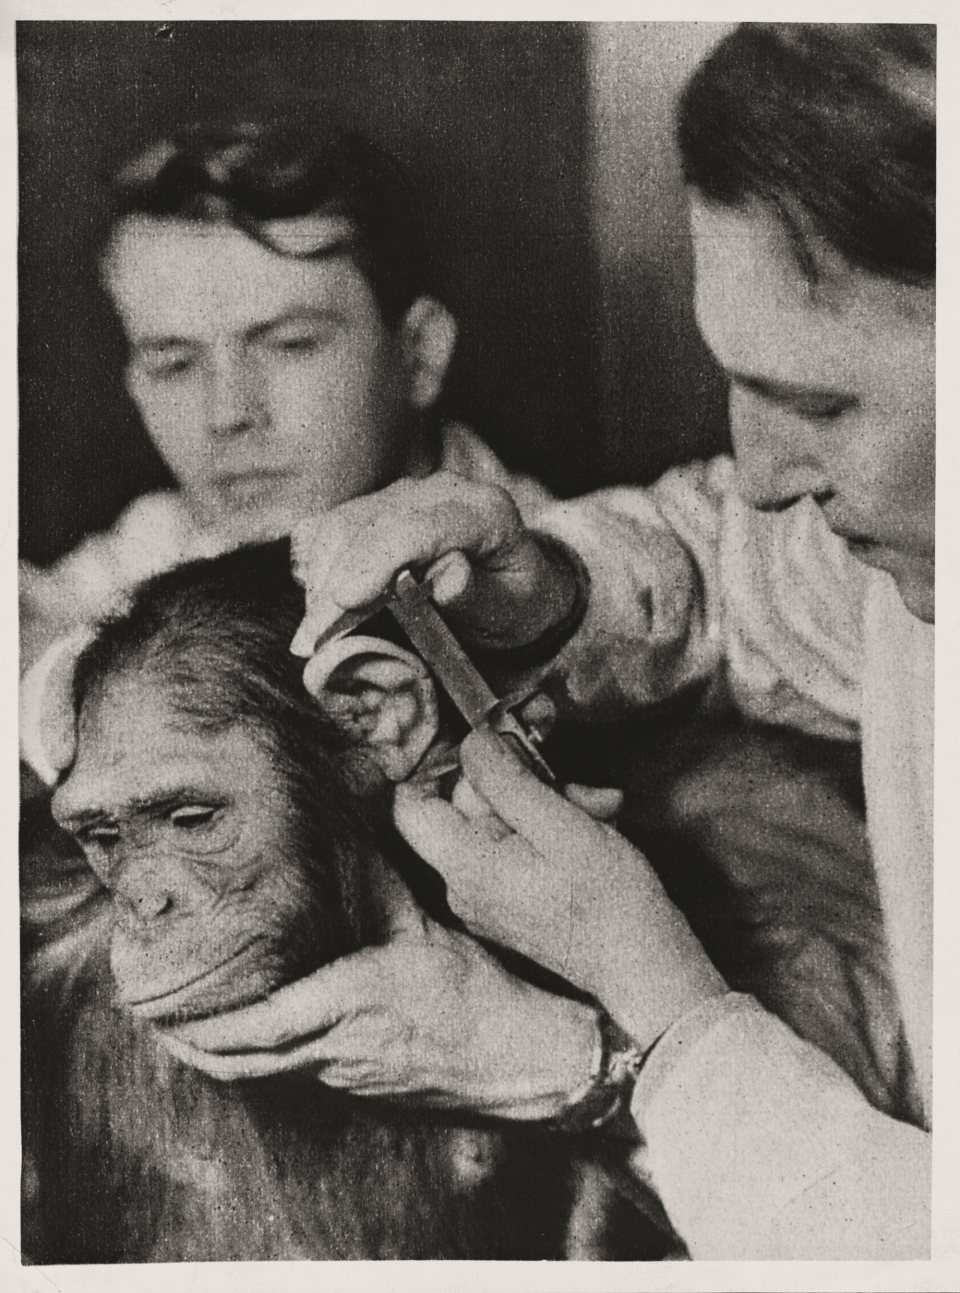 나치 과학자들은 인종적인 혈통을 확립하기 위해 인간과 유인원의 얼굴을 측정하는 시스템을 개발했다. 그들은 아리아 독일인들이 더 진화했으며 유태인들은 유인원에 가까웠다는 주장을 뒷받침하기 위해 편향된 결과를 사용했다. 출처: GettyImages